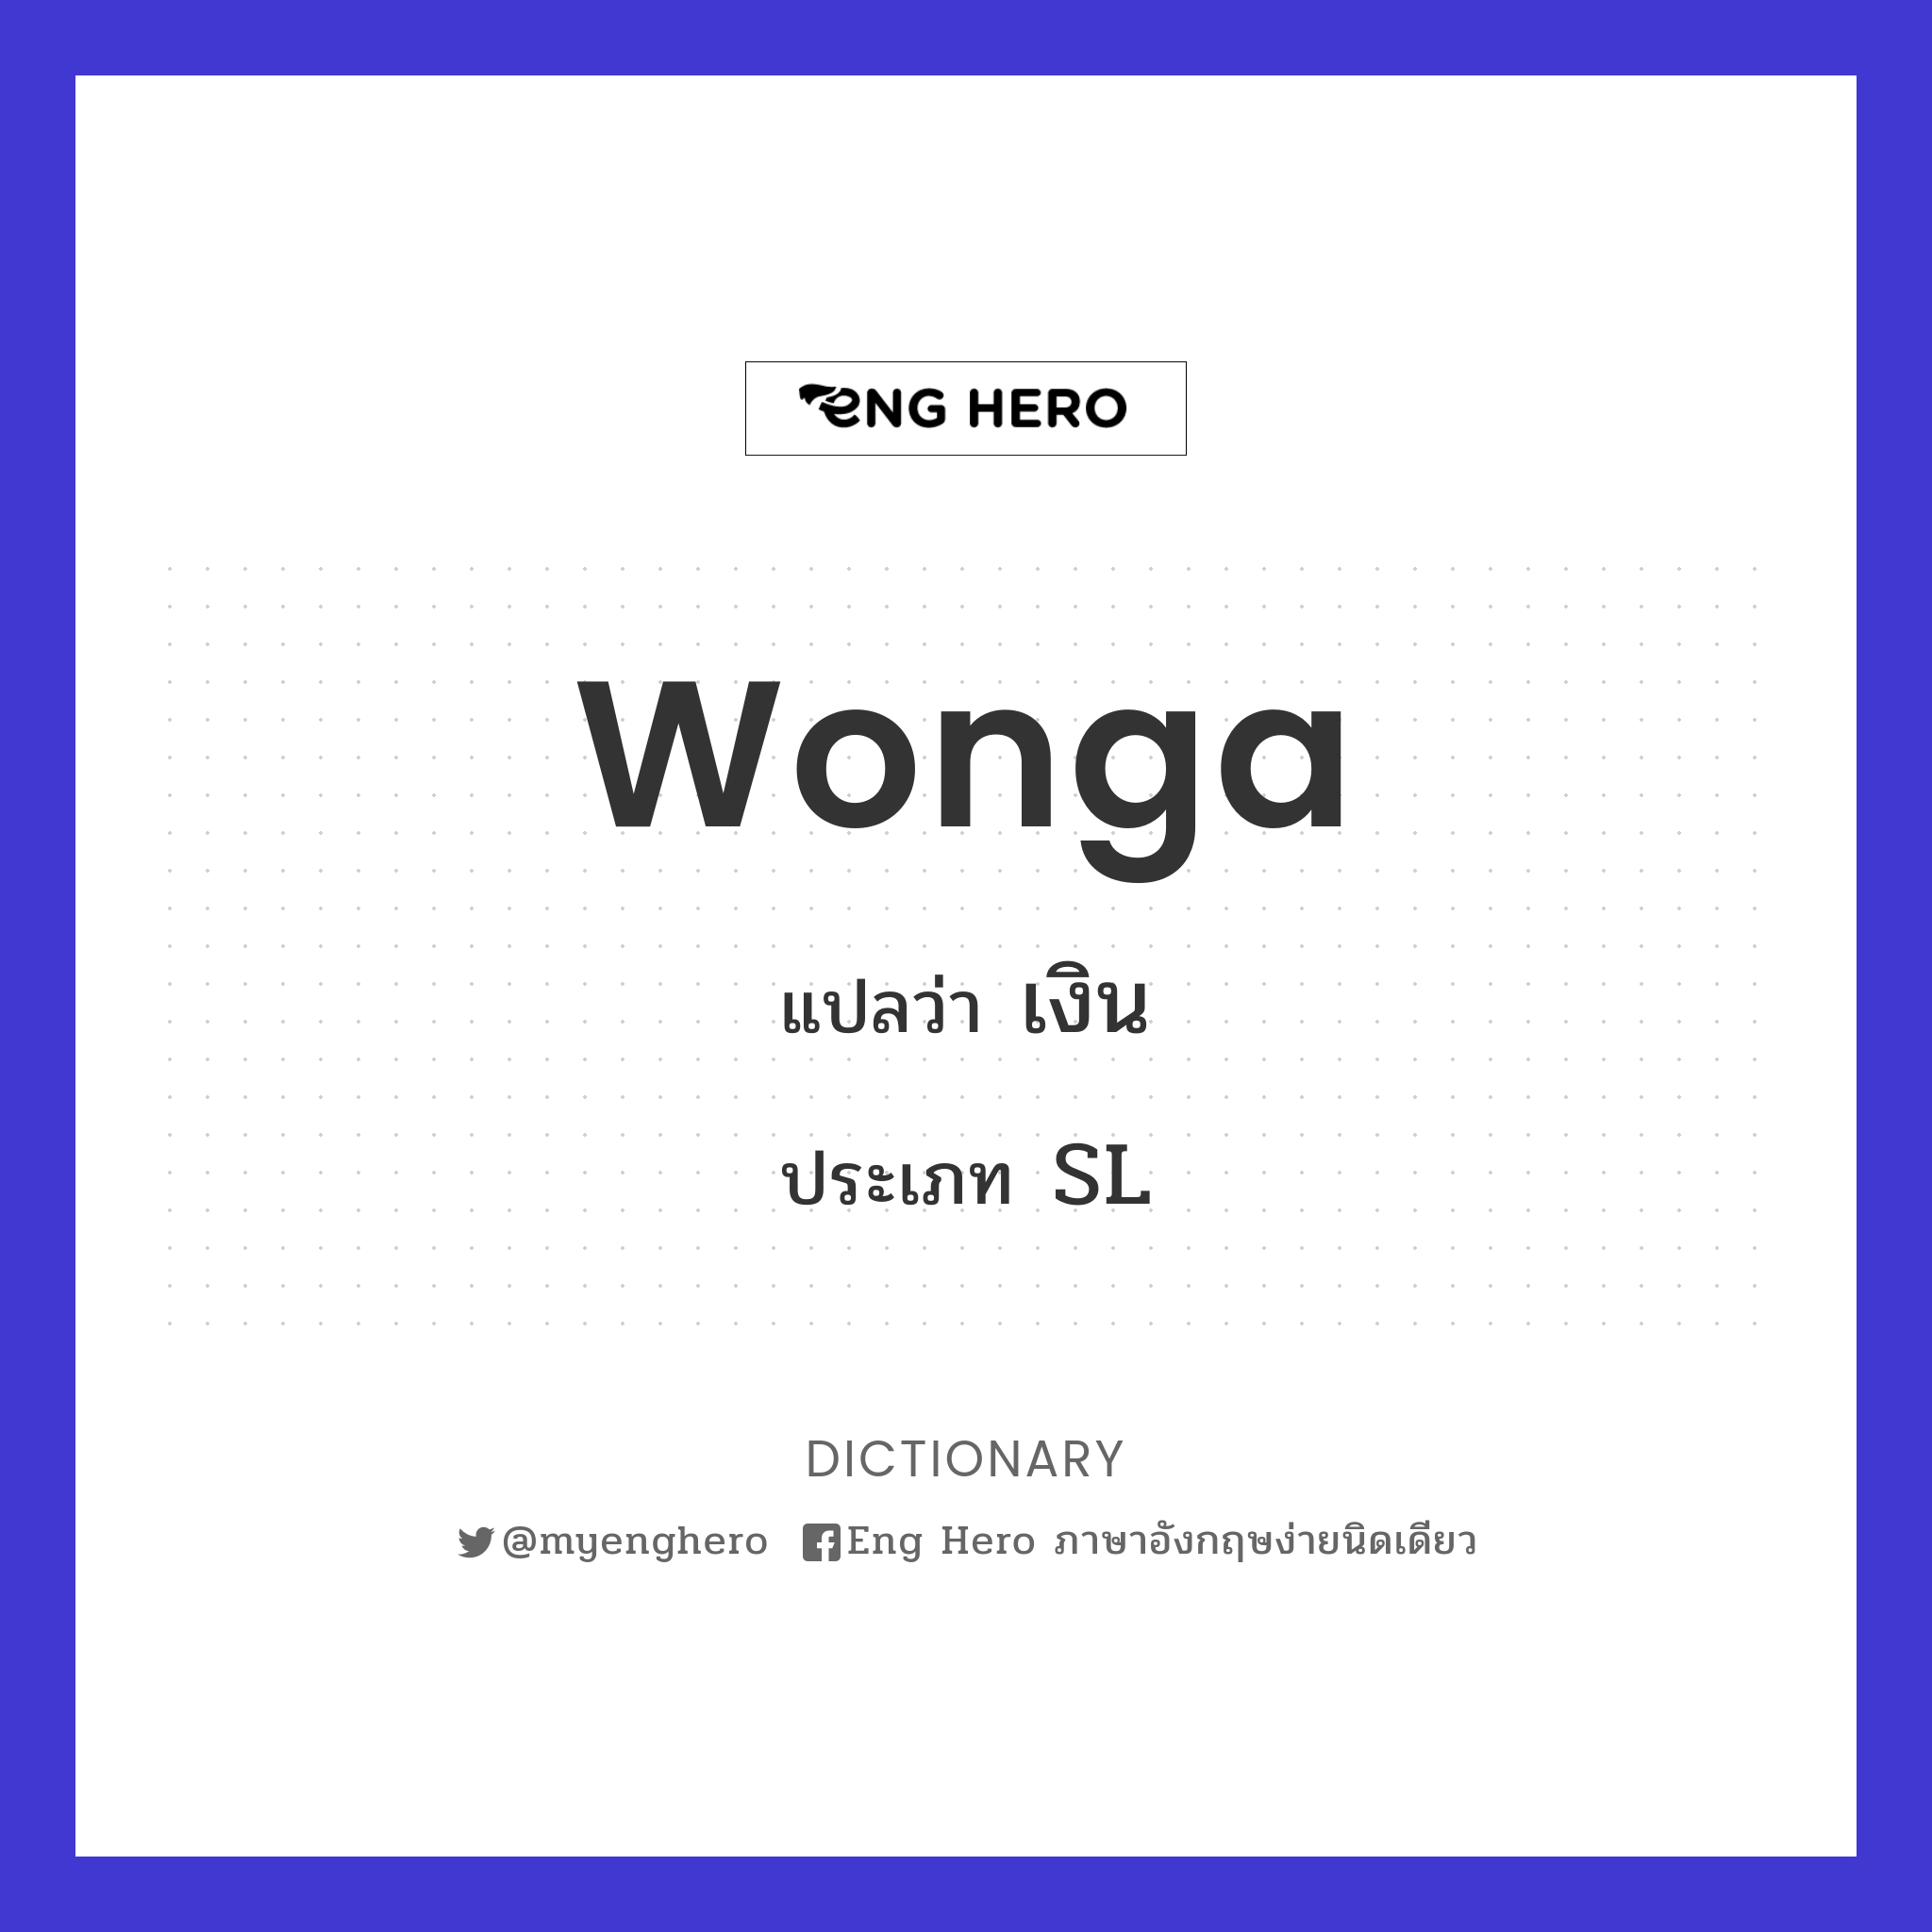 wonga